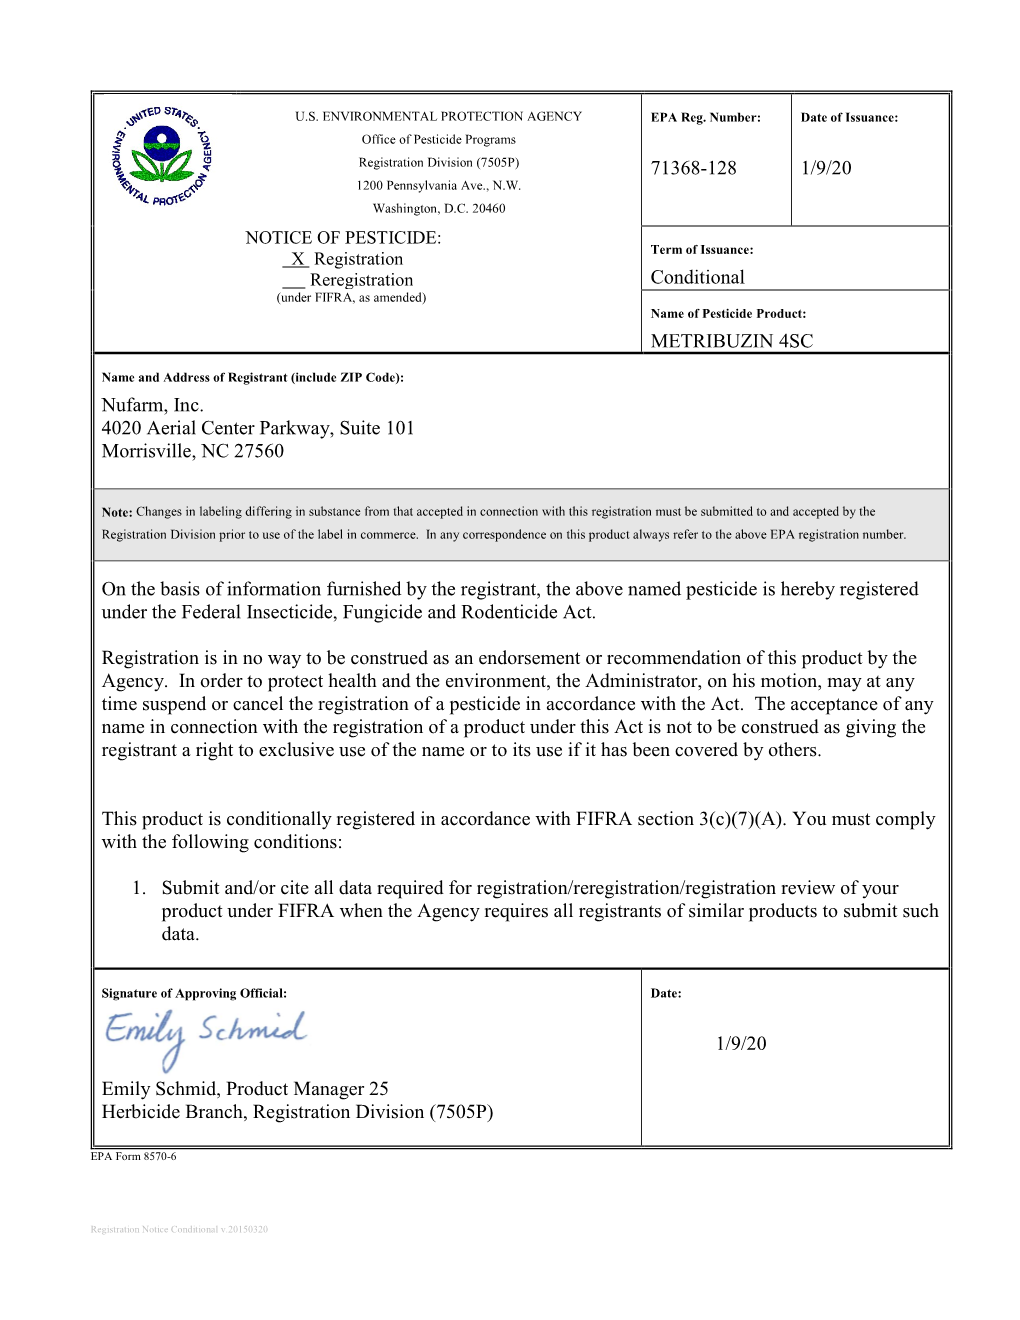 US EPA, Pesticide Product Label, METRIBUZIN 4SC,01/09/2020